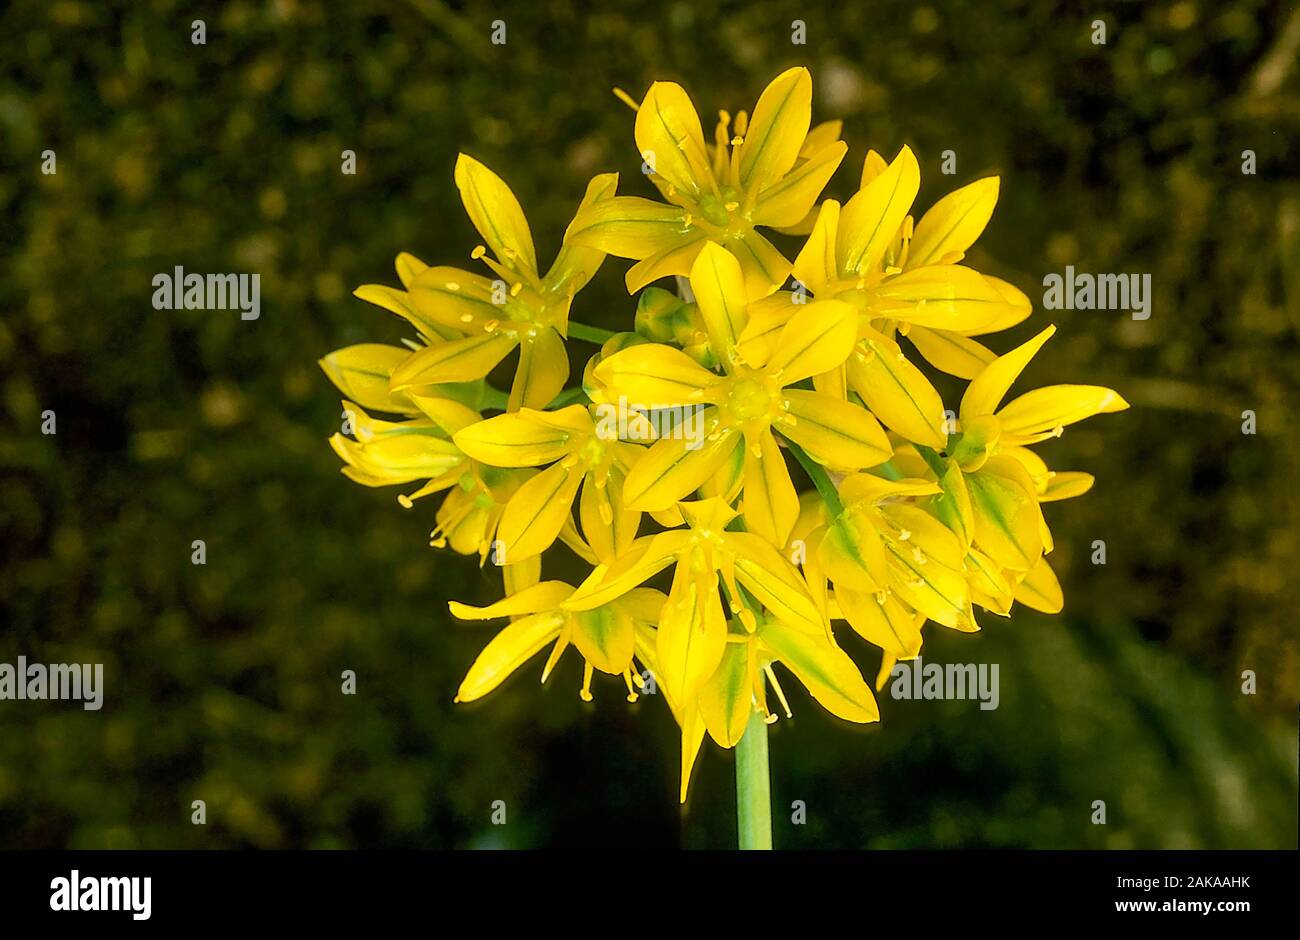 Blumenkopf von Allium Moly, Golden Knoblauch oder Yellow Onion. Eine sommerliche blühende Bulbose, die sich ideal für Waldgebiete eignet. Stockfoto